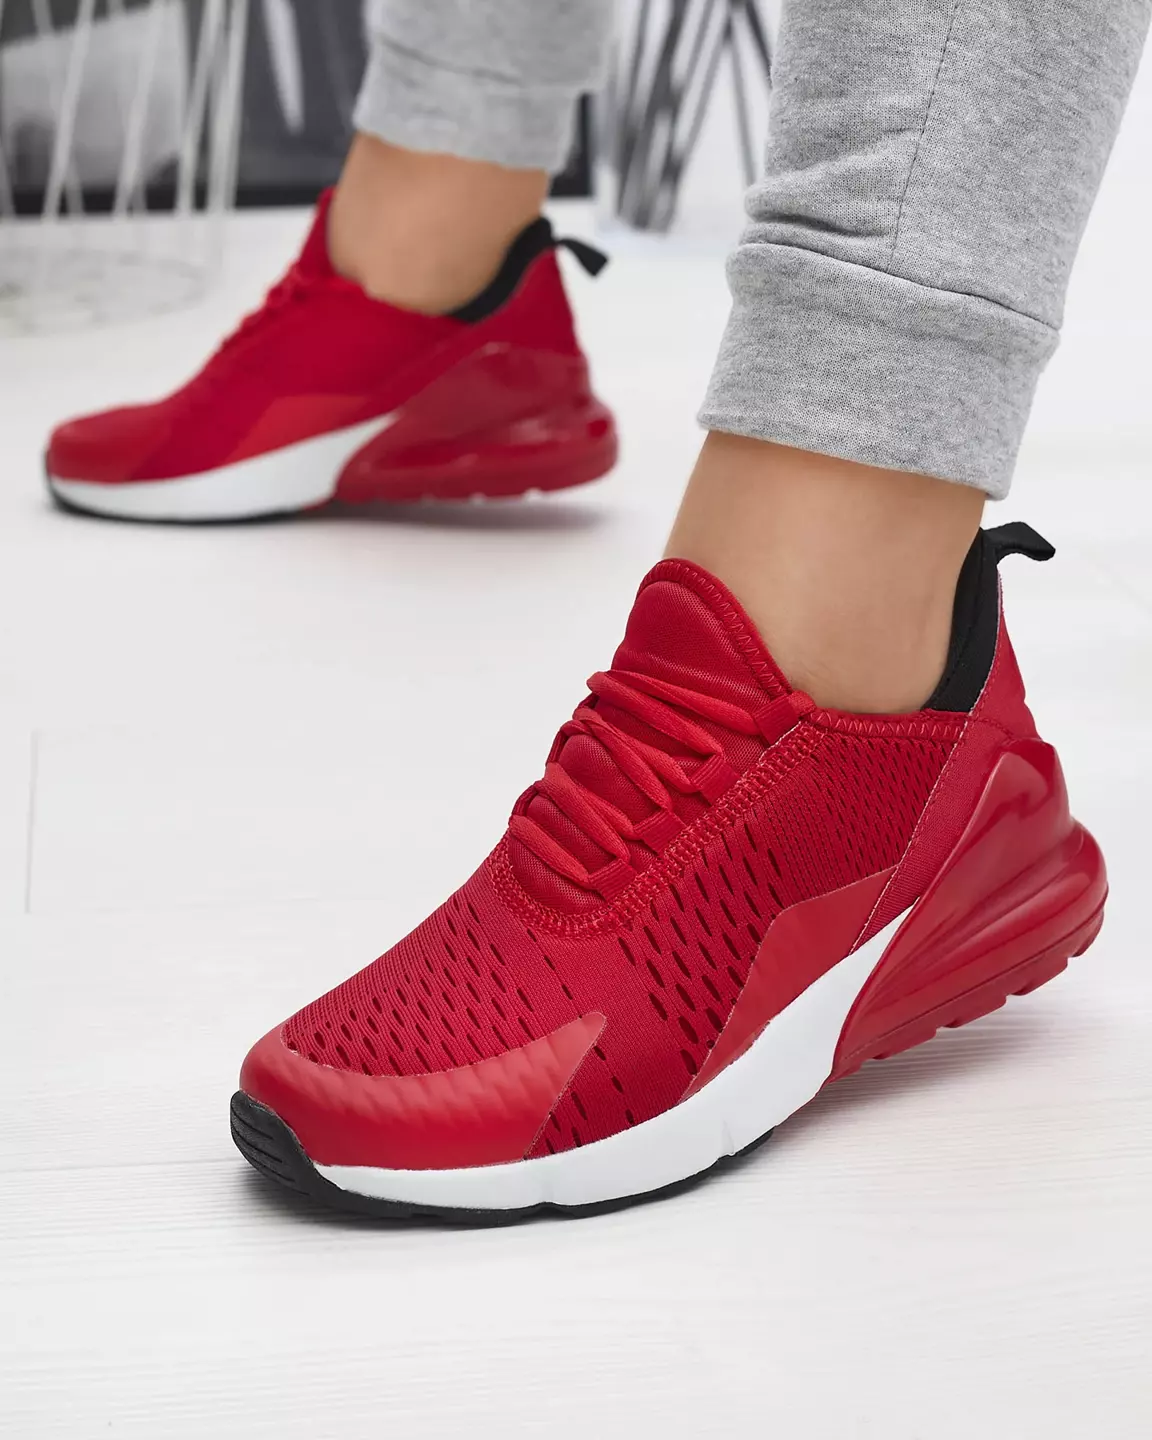 Royalfashion Czerwone damskie materiałowe buty sportowe Tayrio